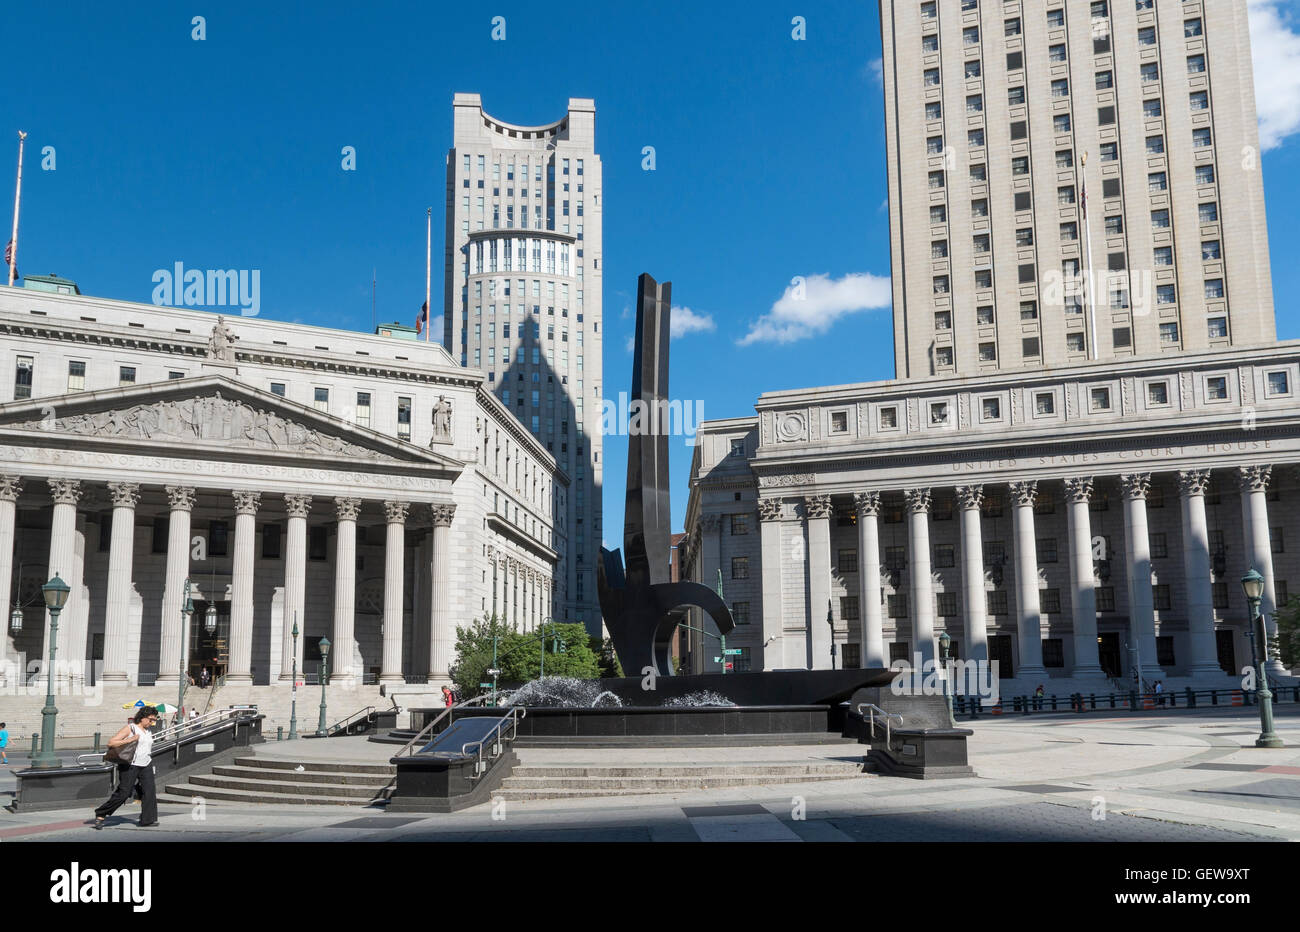 Avis de Foley Square, New York, avec la sculpture, l'Édifice de la Cour suprême, et United States Courthouse Banque D'Images